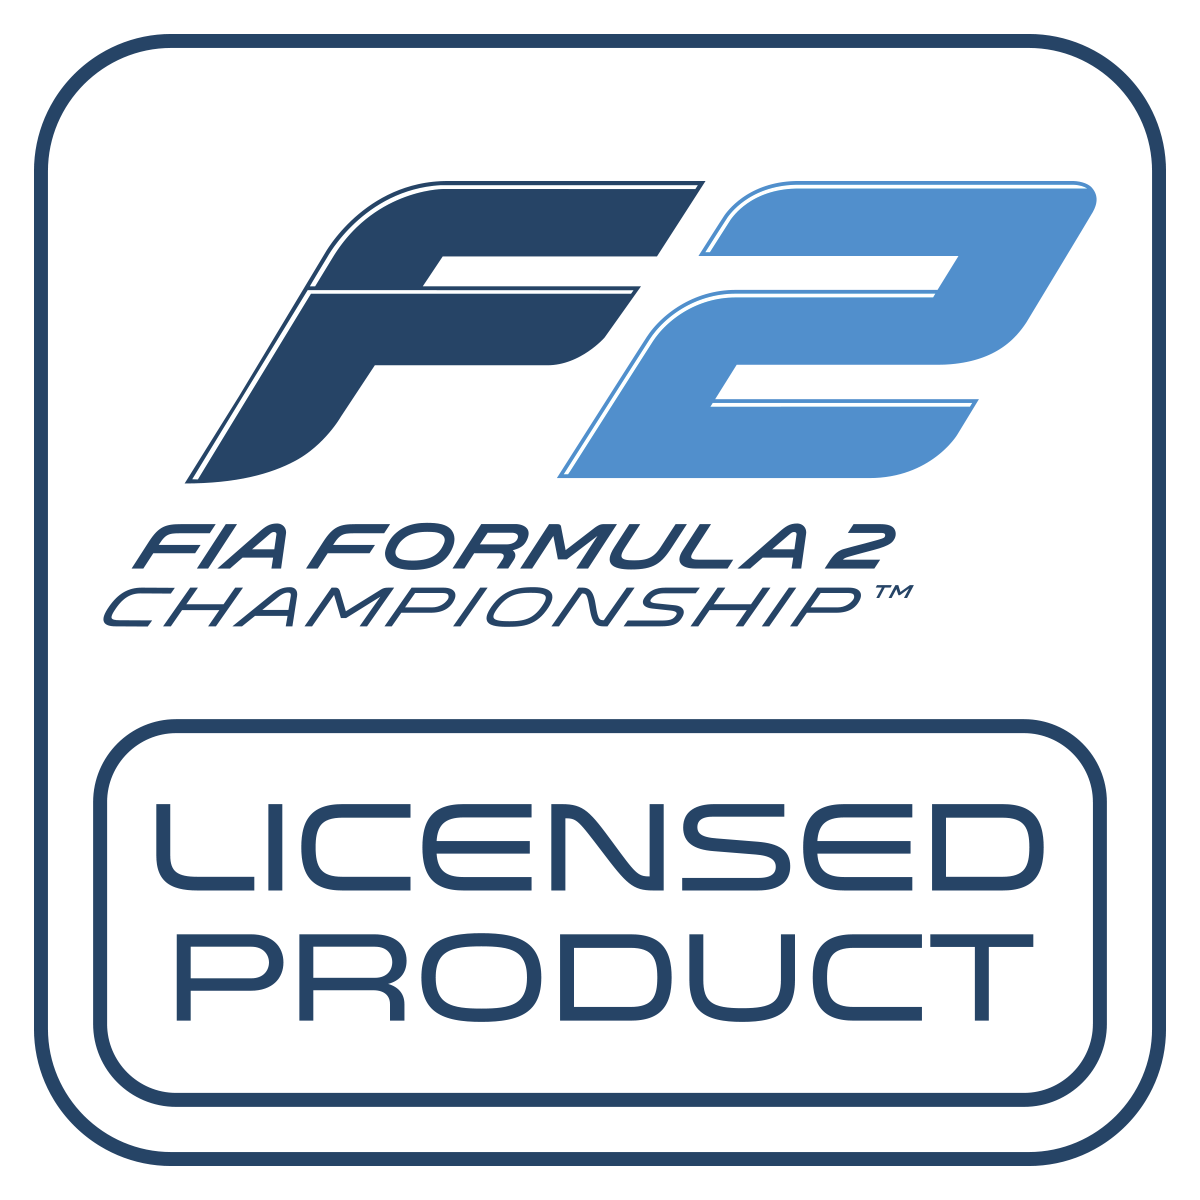 Logotipo de produto licenciado F2